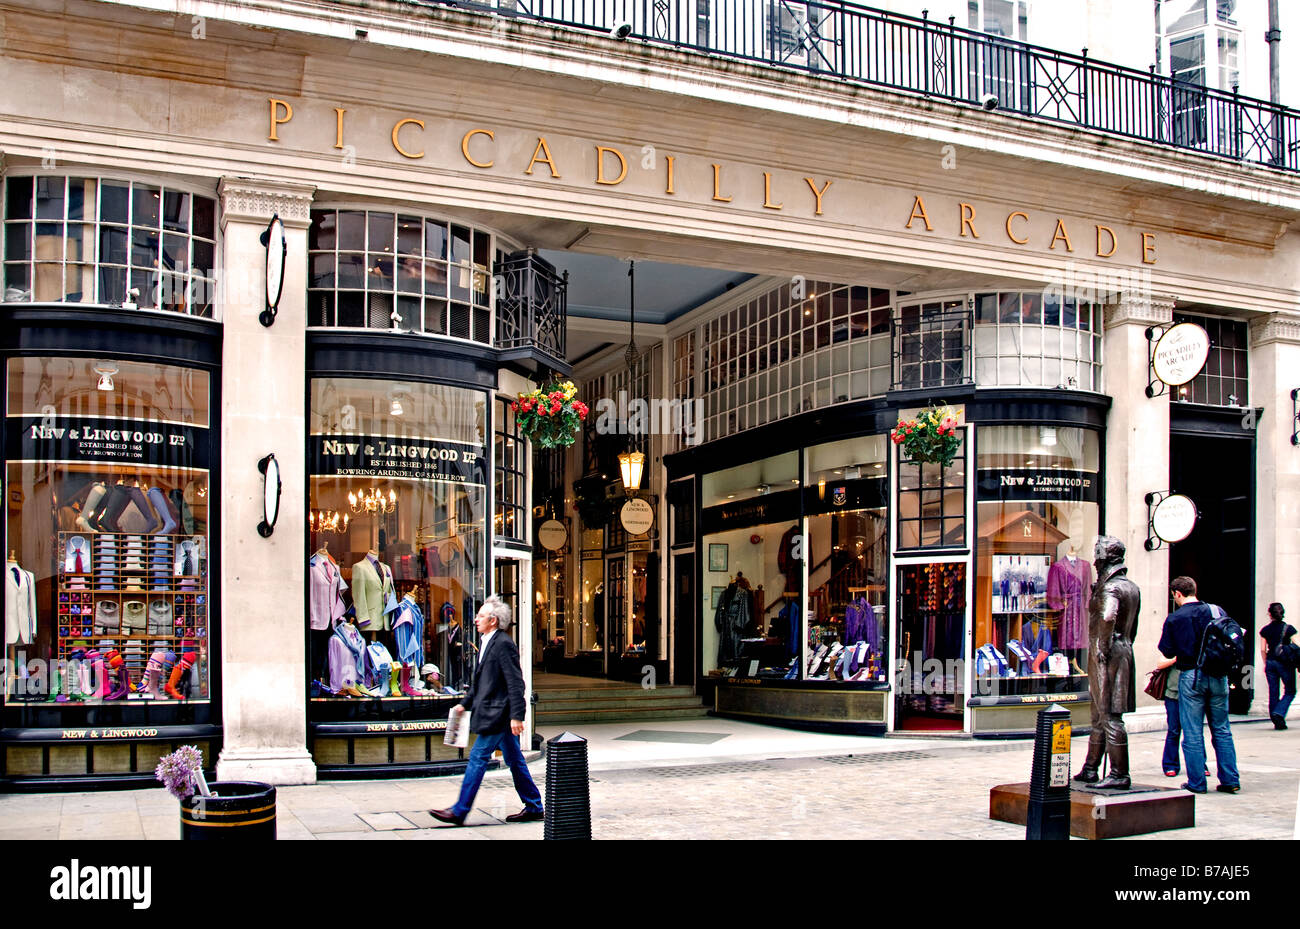 Le Piccadilly Arcade passe entre Piccadilly et de Jermyn Street au centre de Londres. Banque D'Images